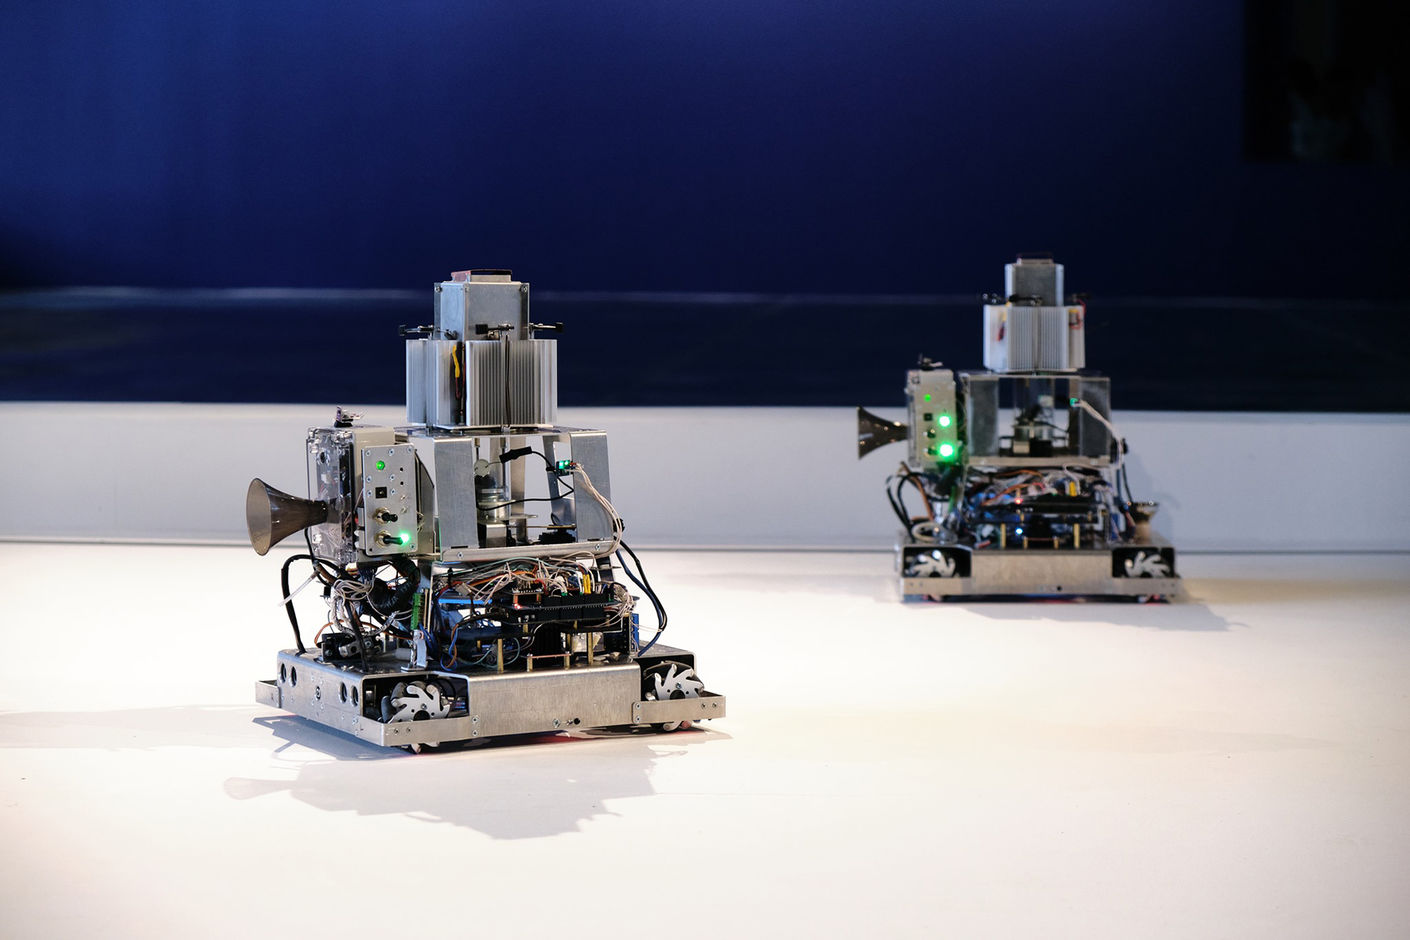 Группа «Куда бегут собаки» — «Керосиновые хроники. Гриб». Инсталляция, в которой химическая коммуникация гриба и машины даёт возможность для построения химической коммуникации между роботами.